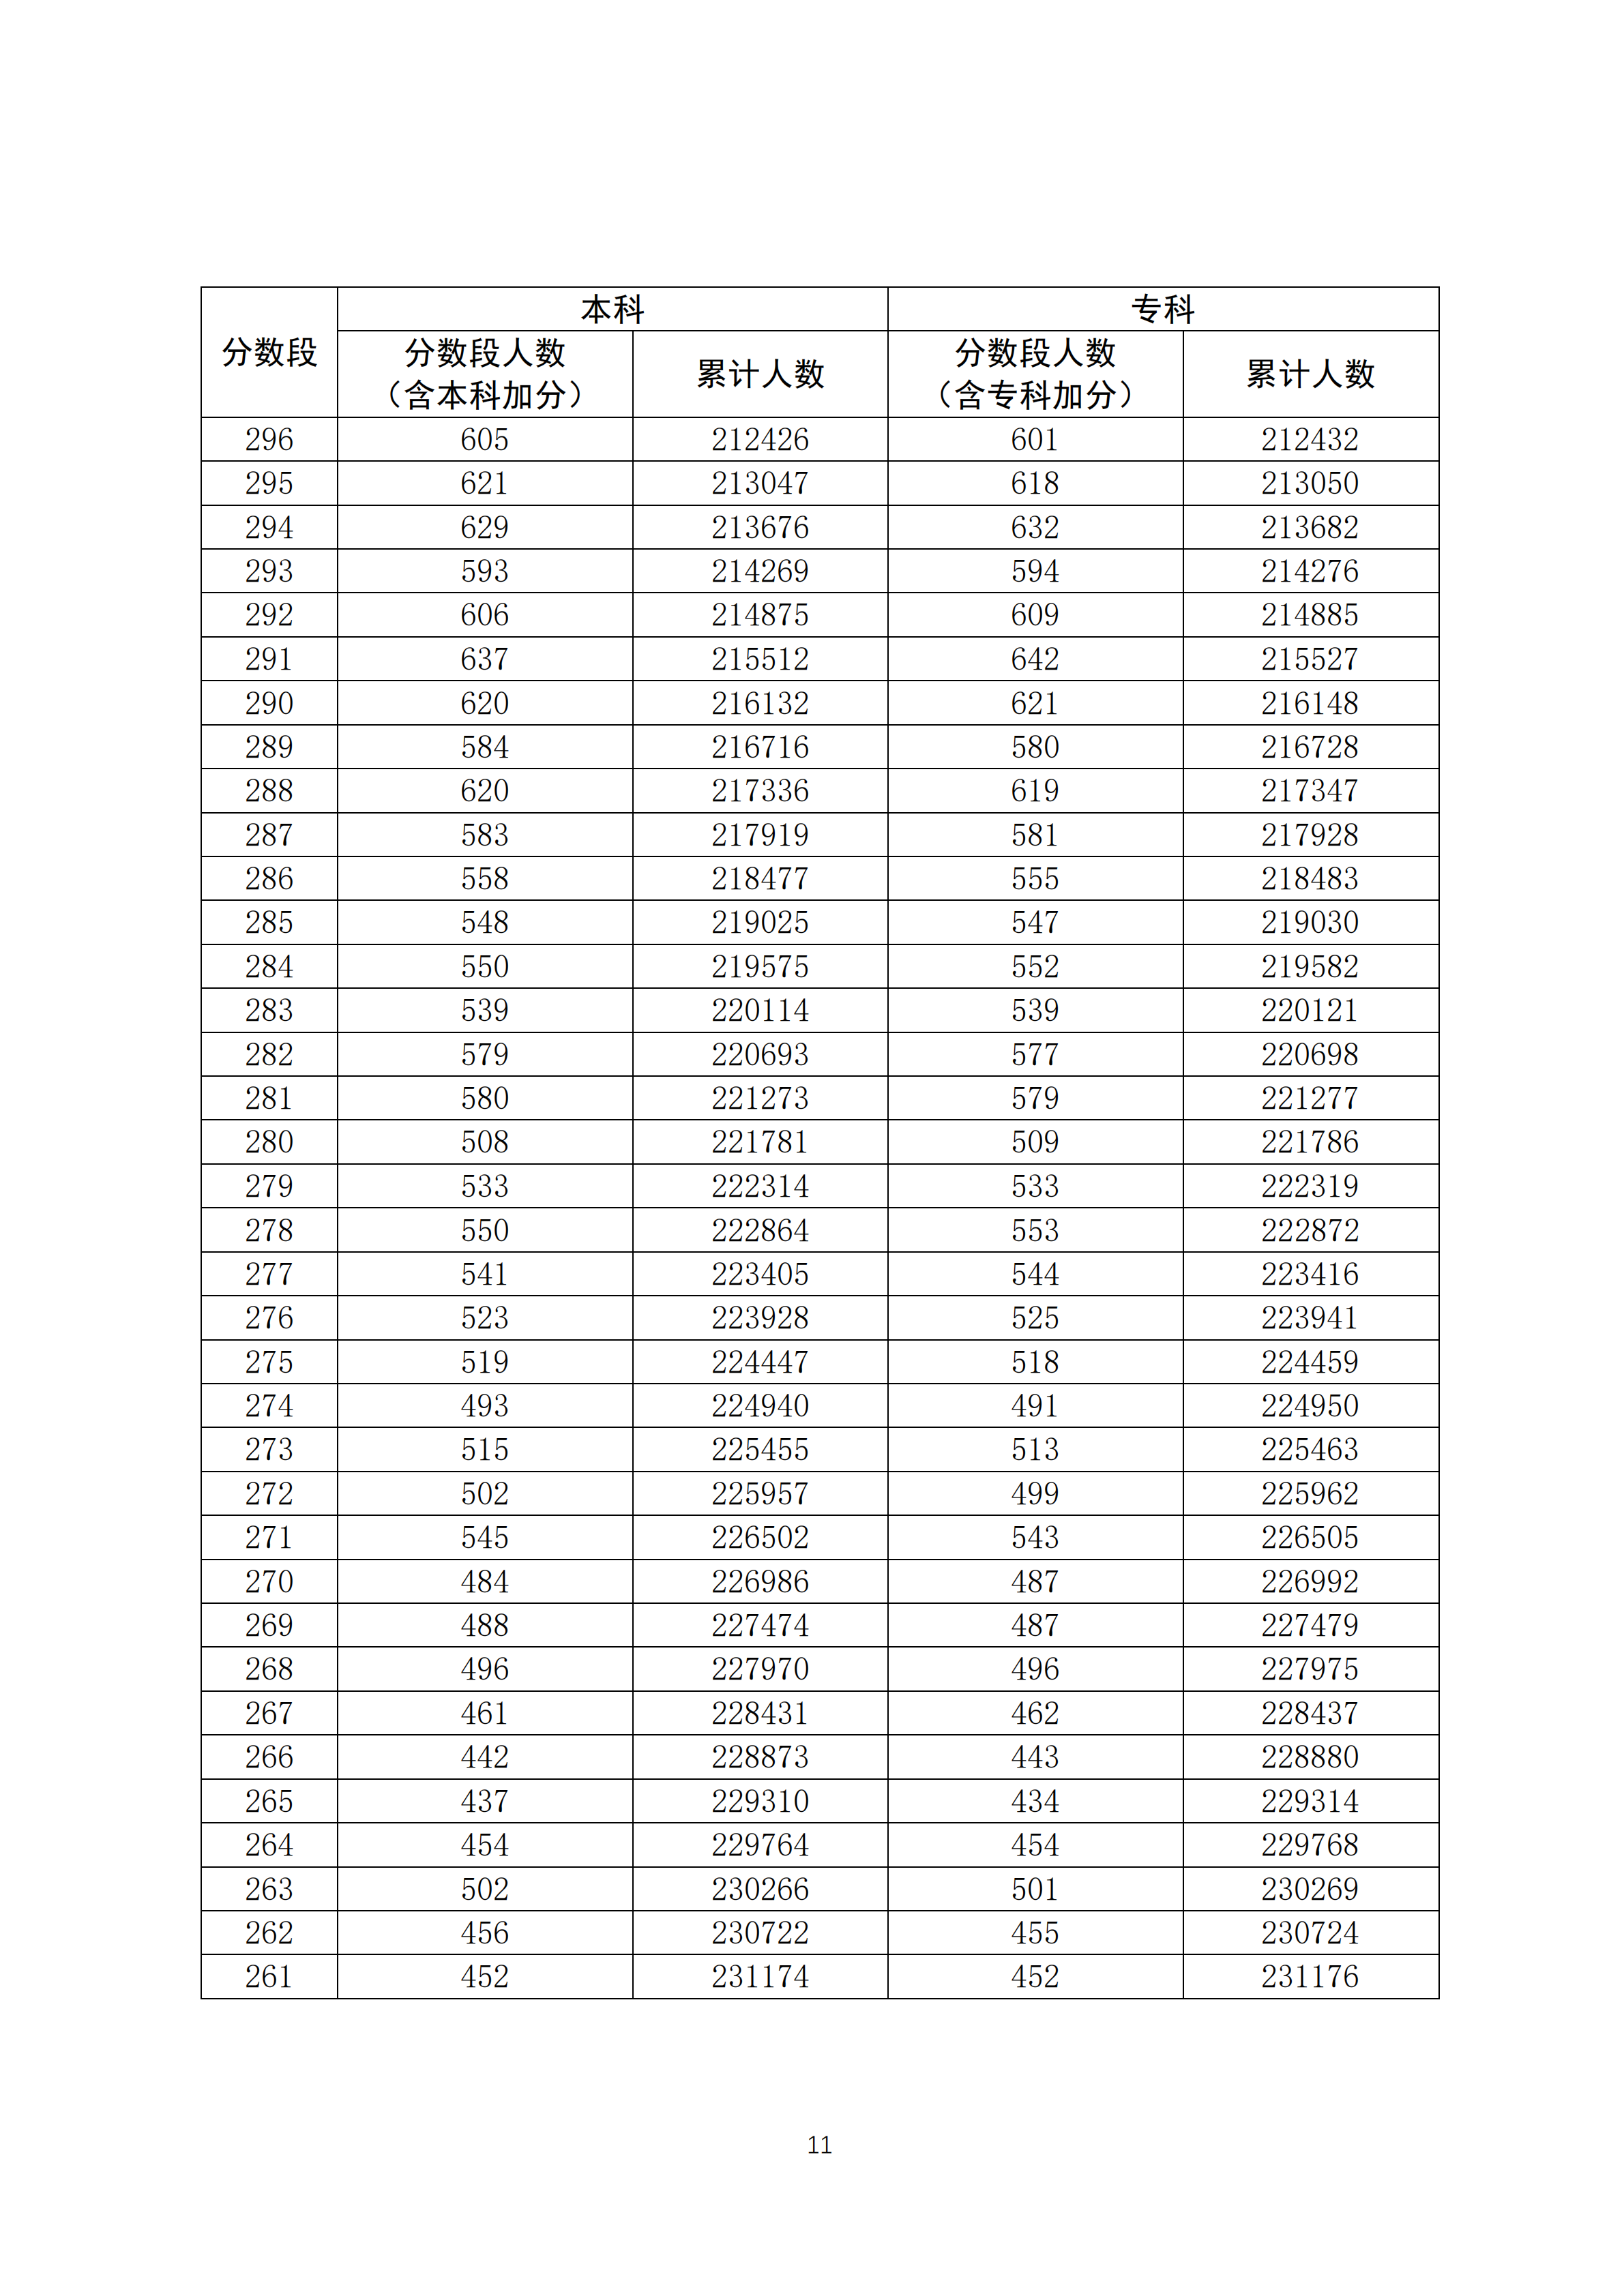 2020年广东高考文科/理科成绩排名 一分一段表